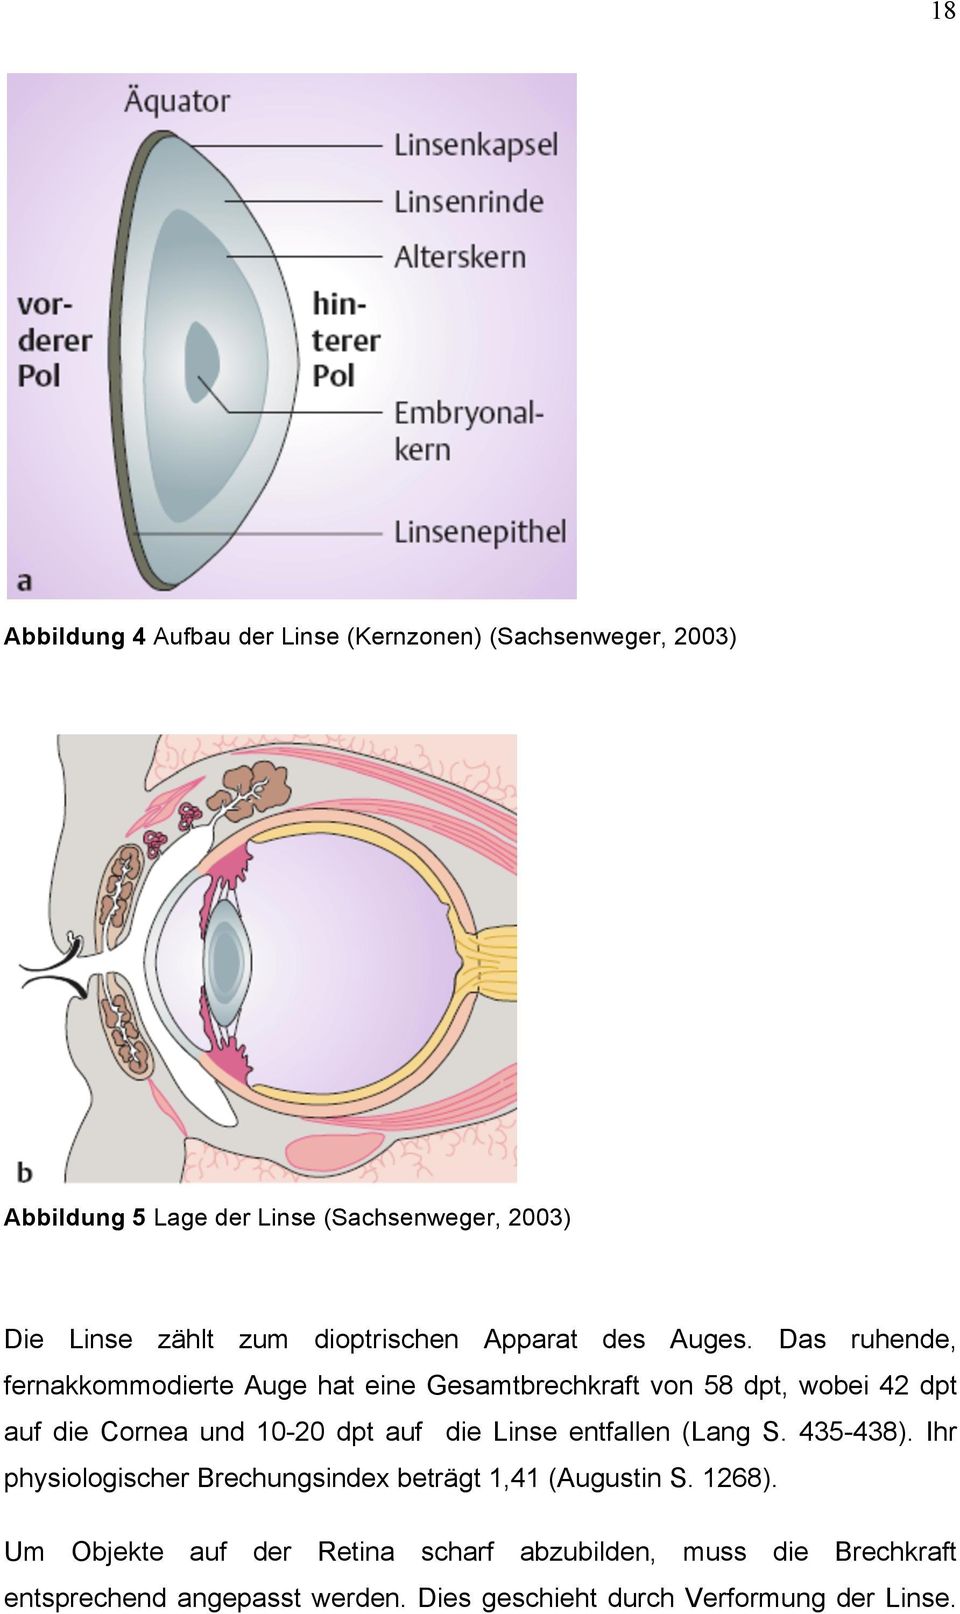 Das ruhende, fernakkommodierte Auge hat eine Gesamtbrechkraft von 58 dpt, wobei 42 dpt auf die Cornea und 10-20 dpt auf die Linse